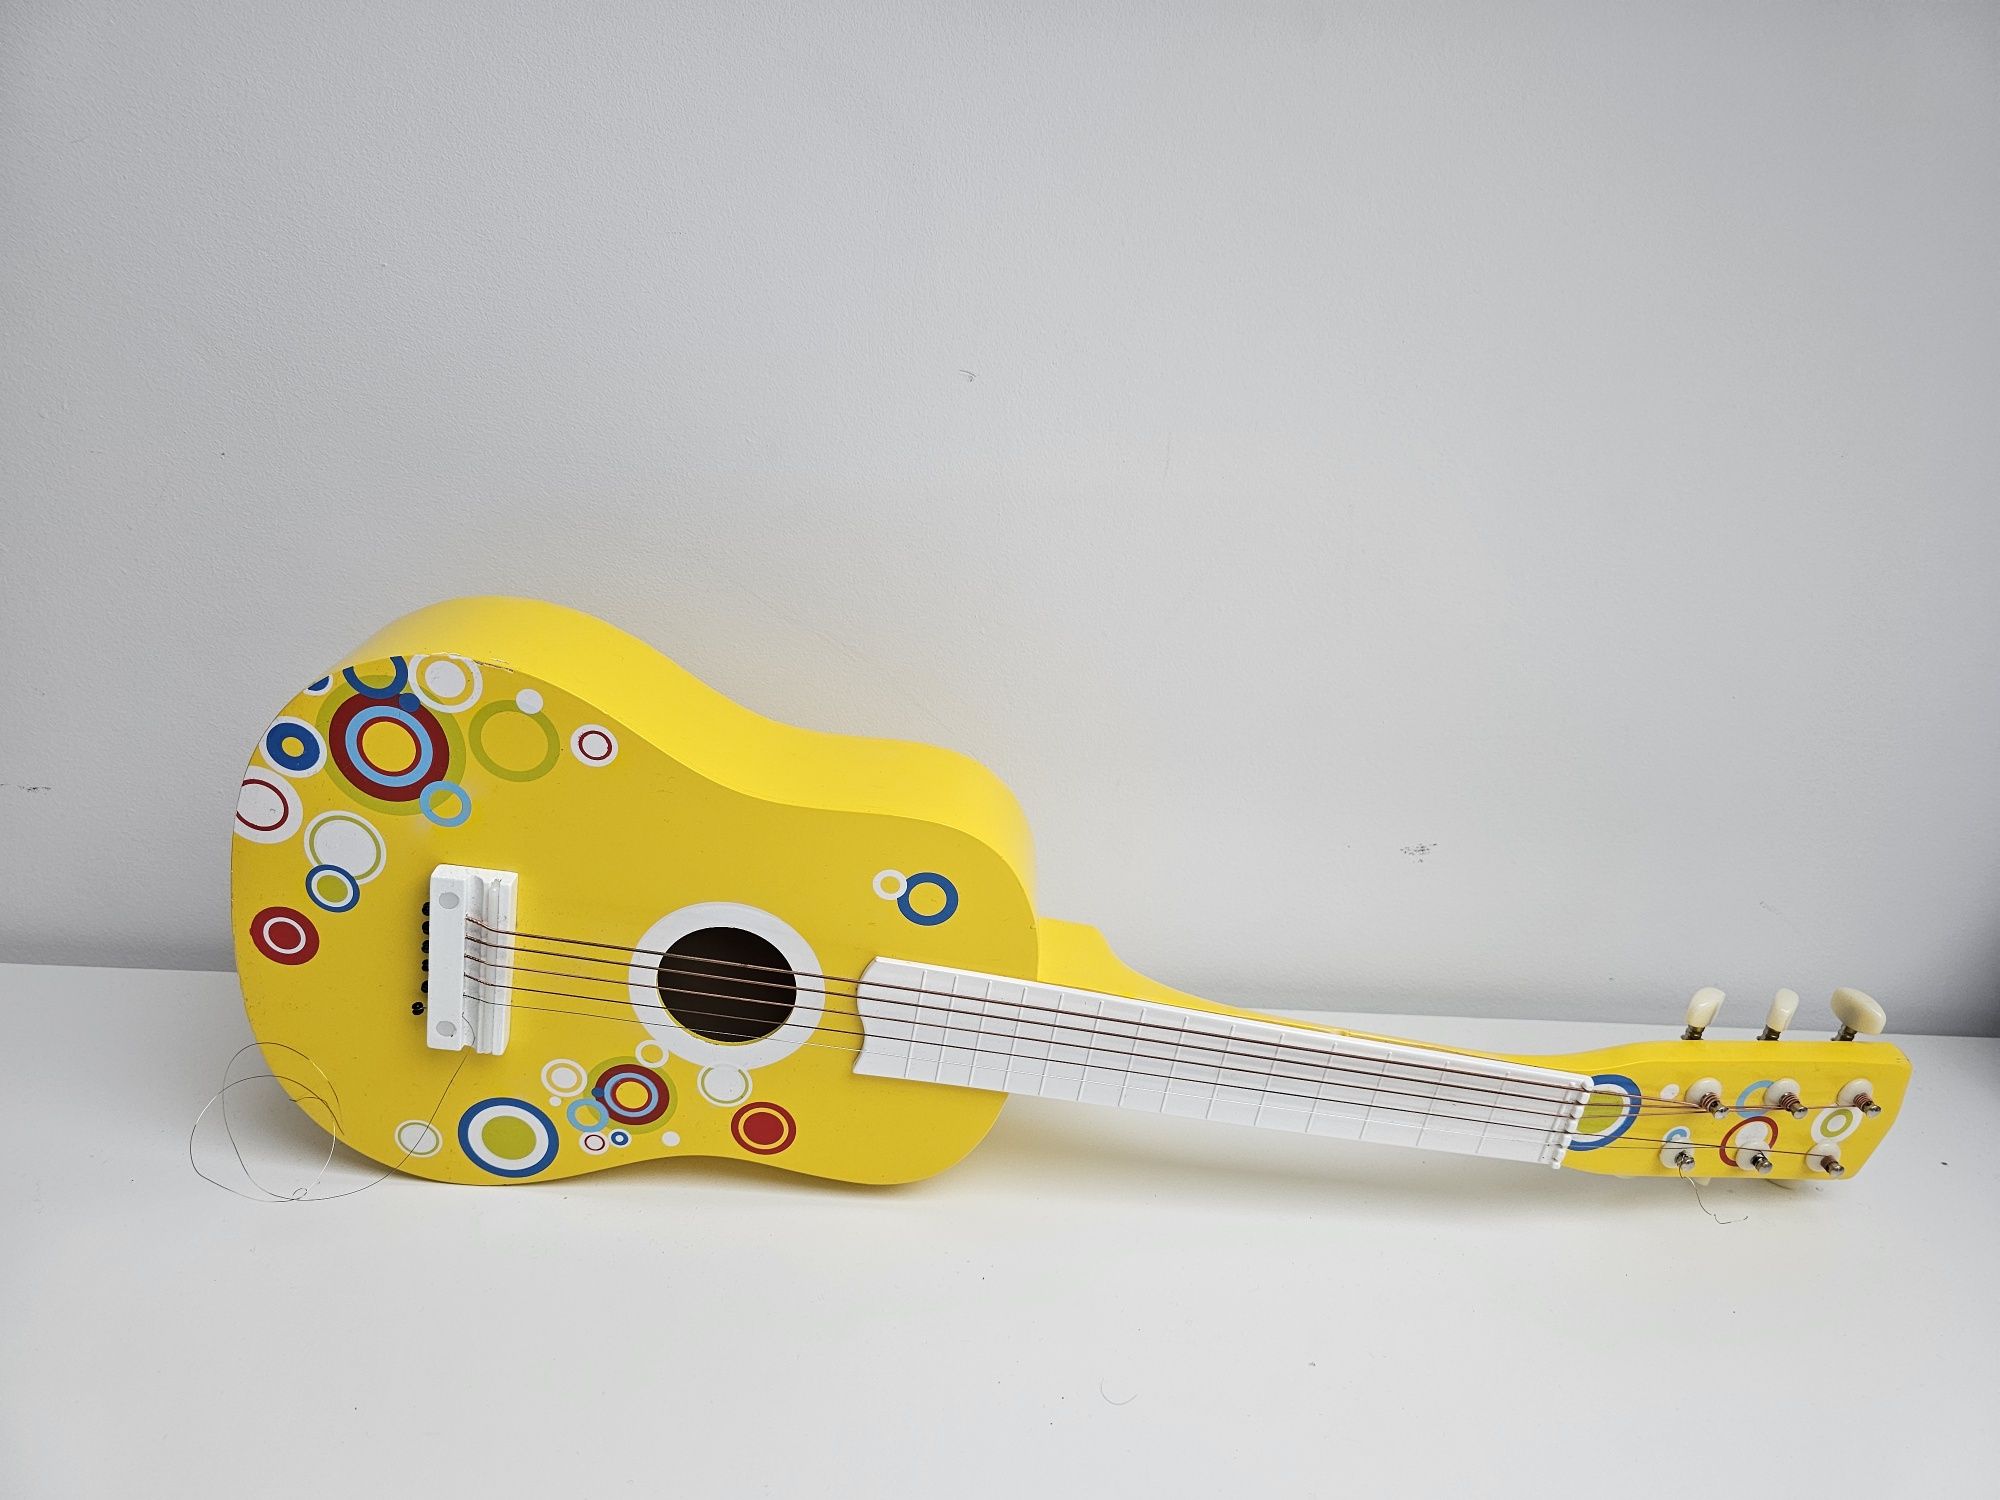 Drewniana gitara dla dzieci marki Lelin

Uwaga: 1 struna do wymiany i